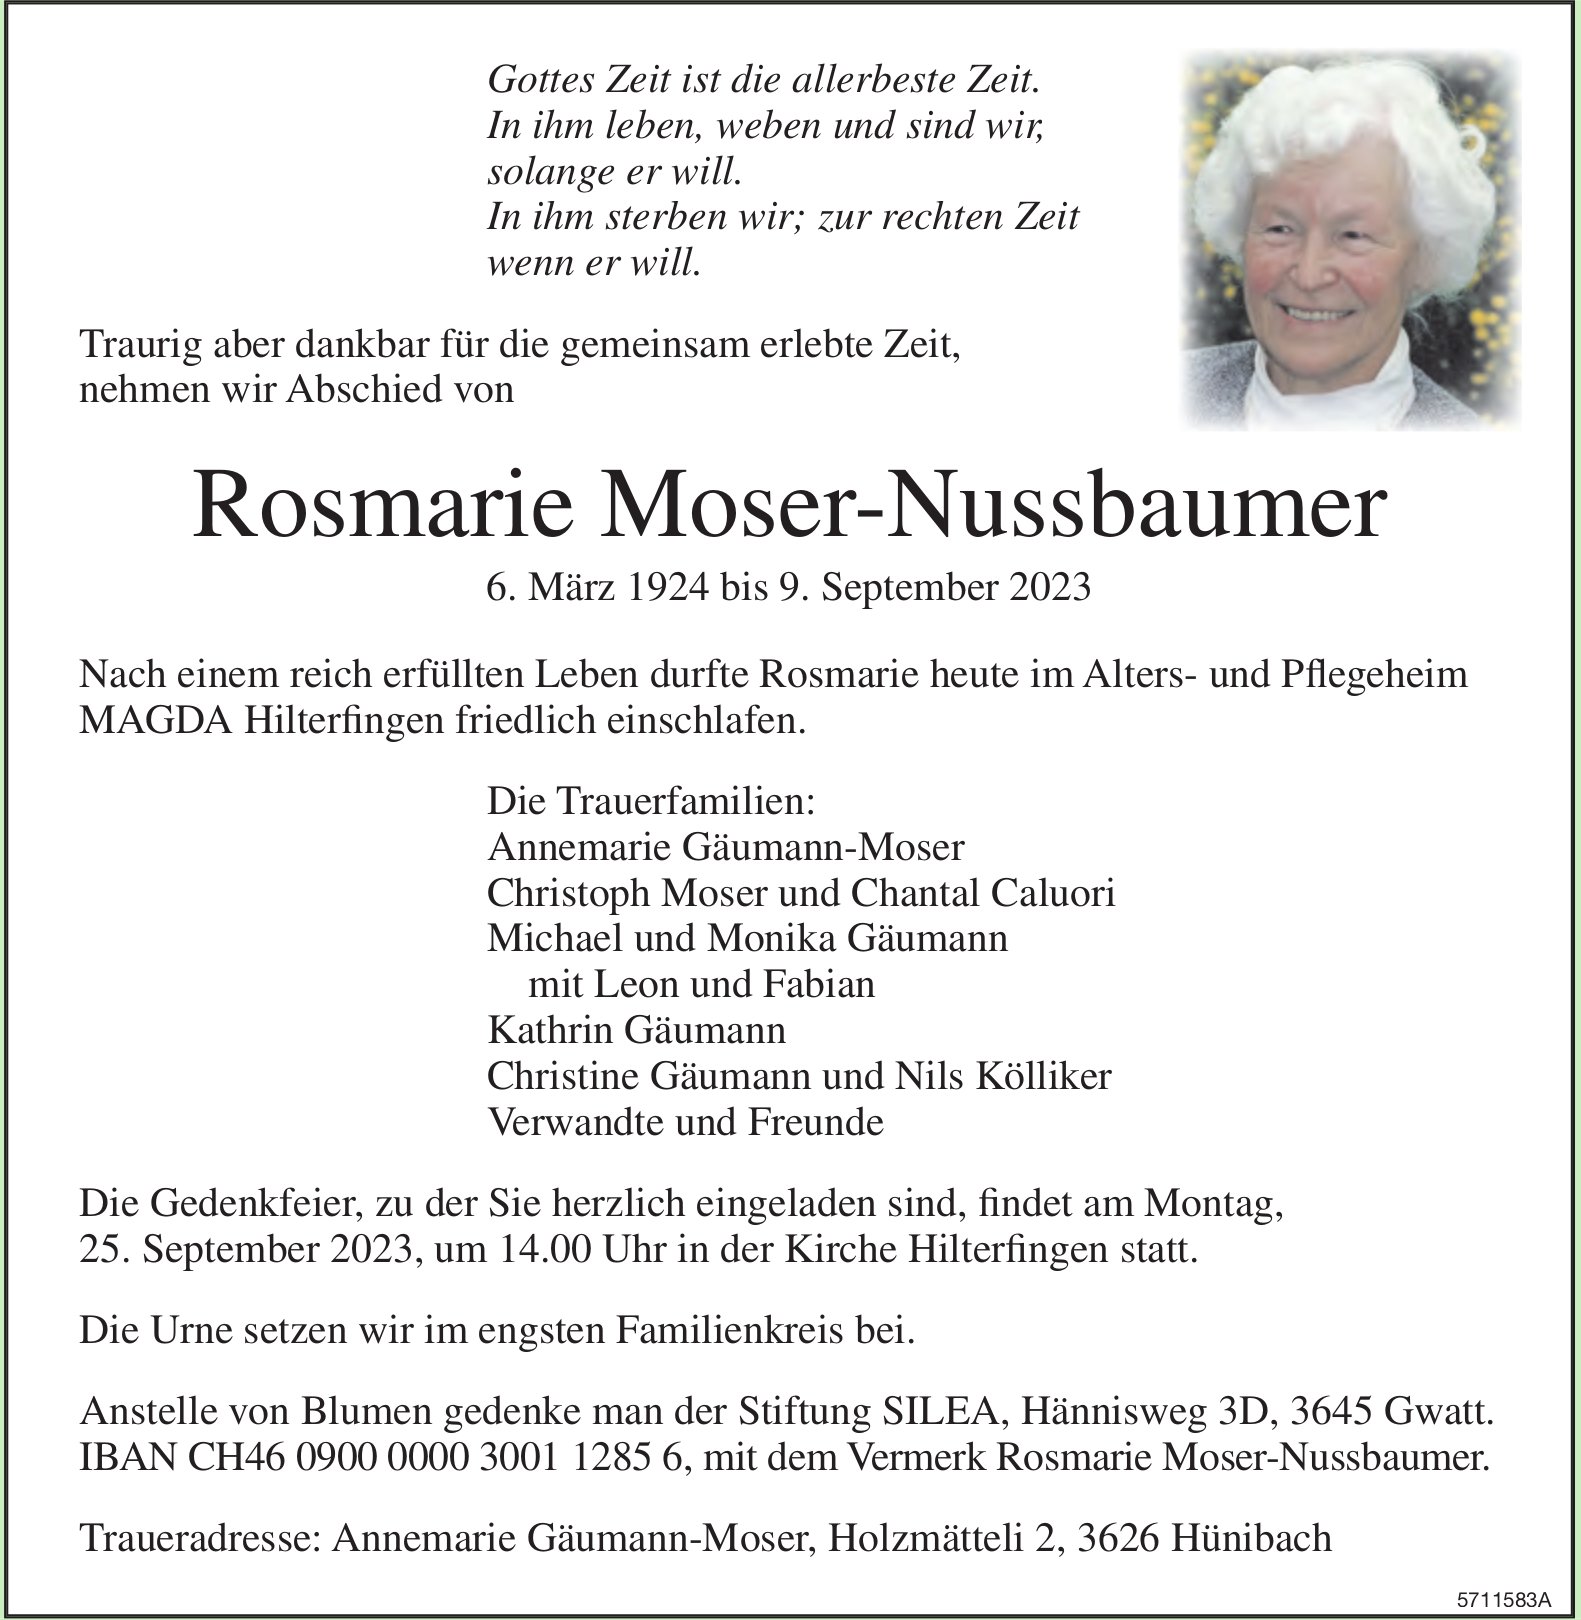 Moser-Nussbaumer Rosmarie, September 2023 / TA